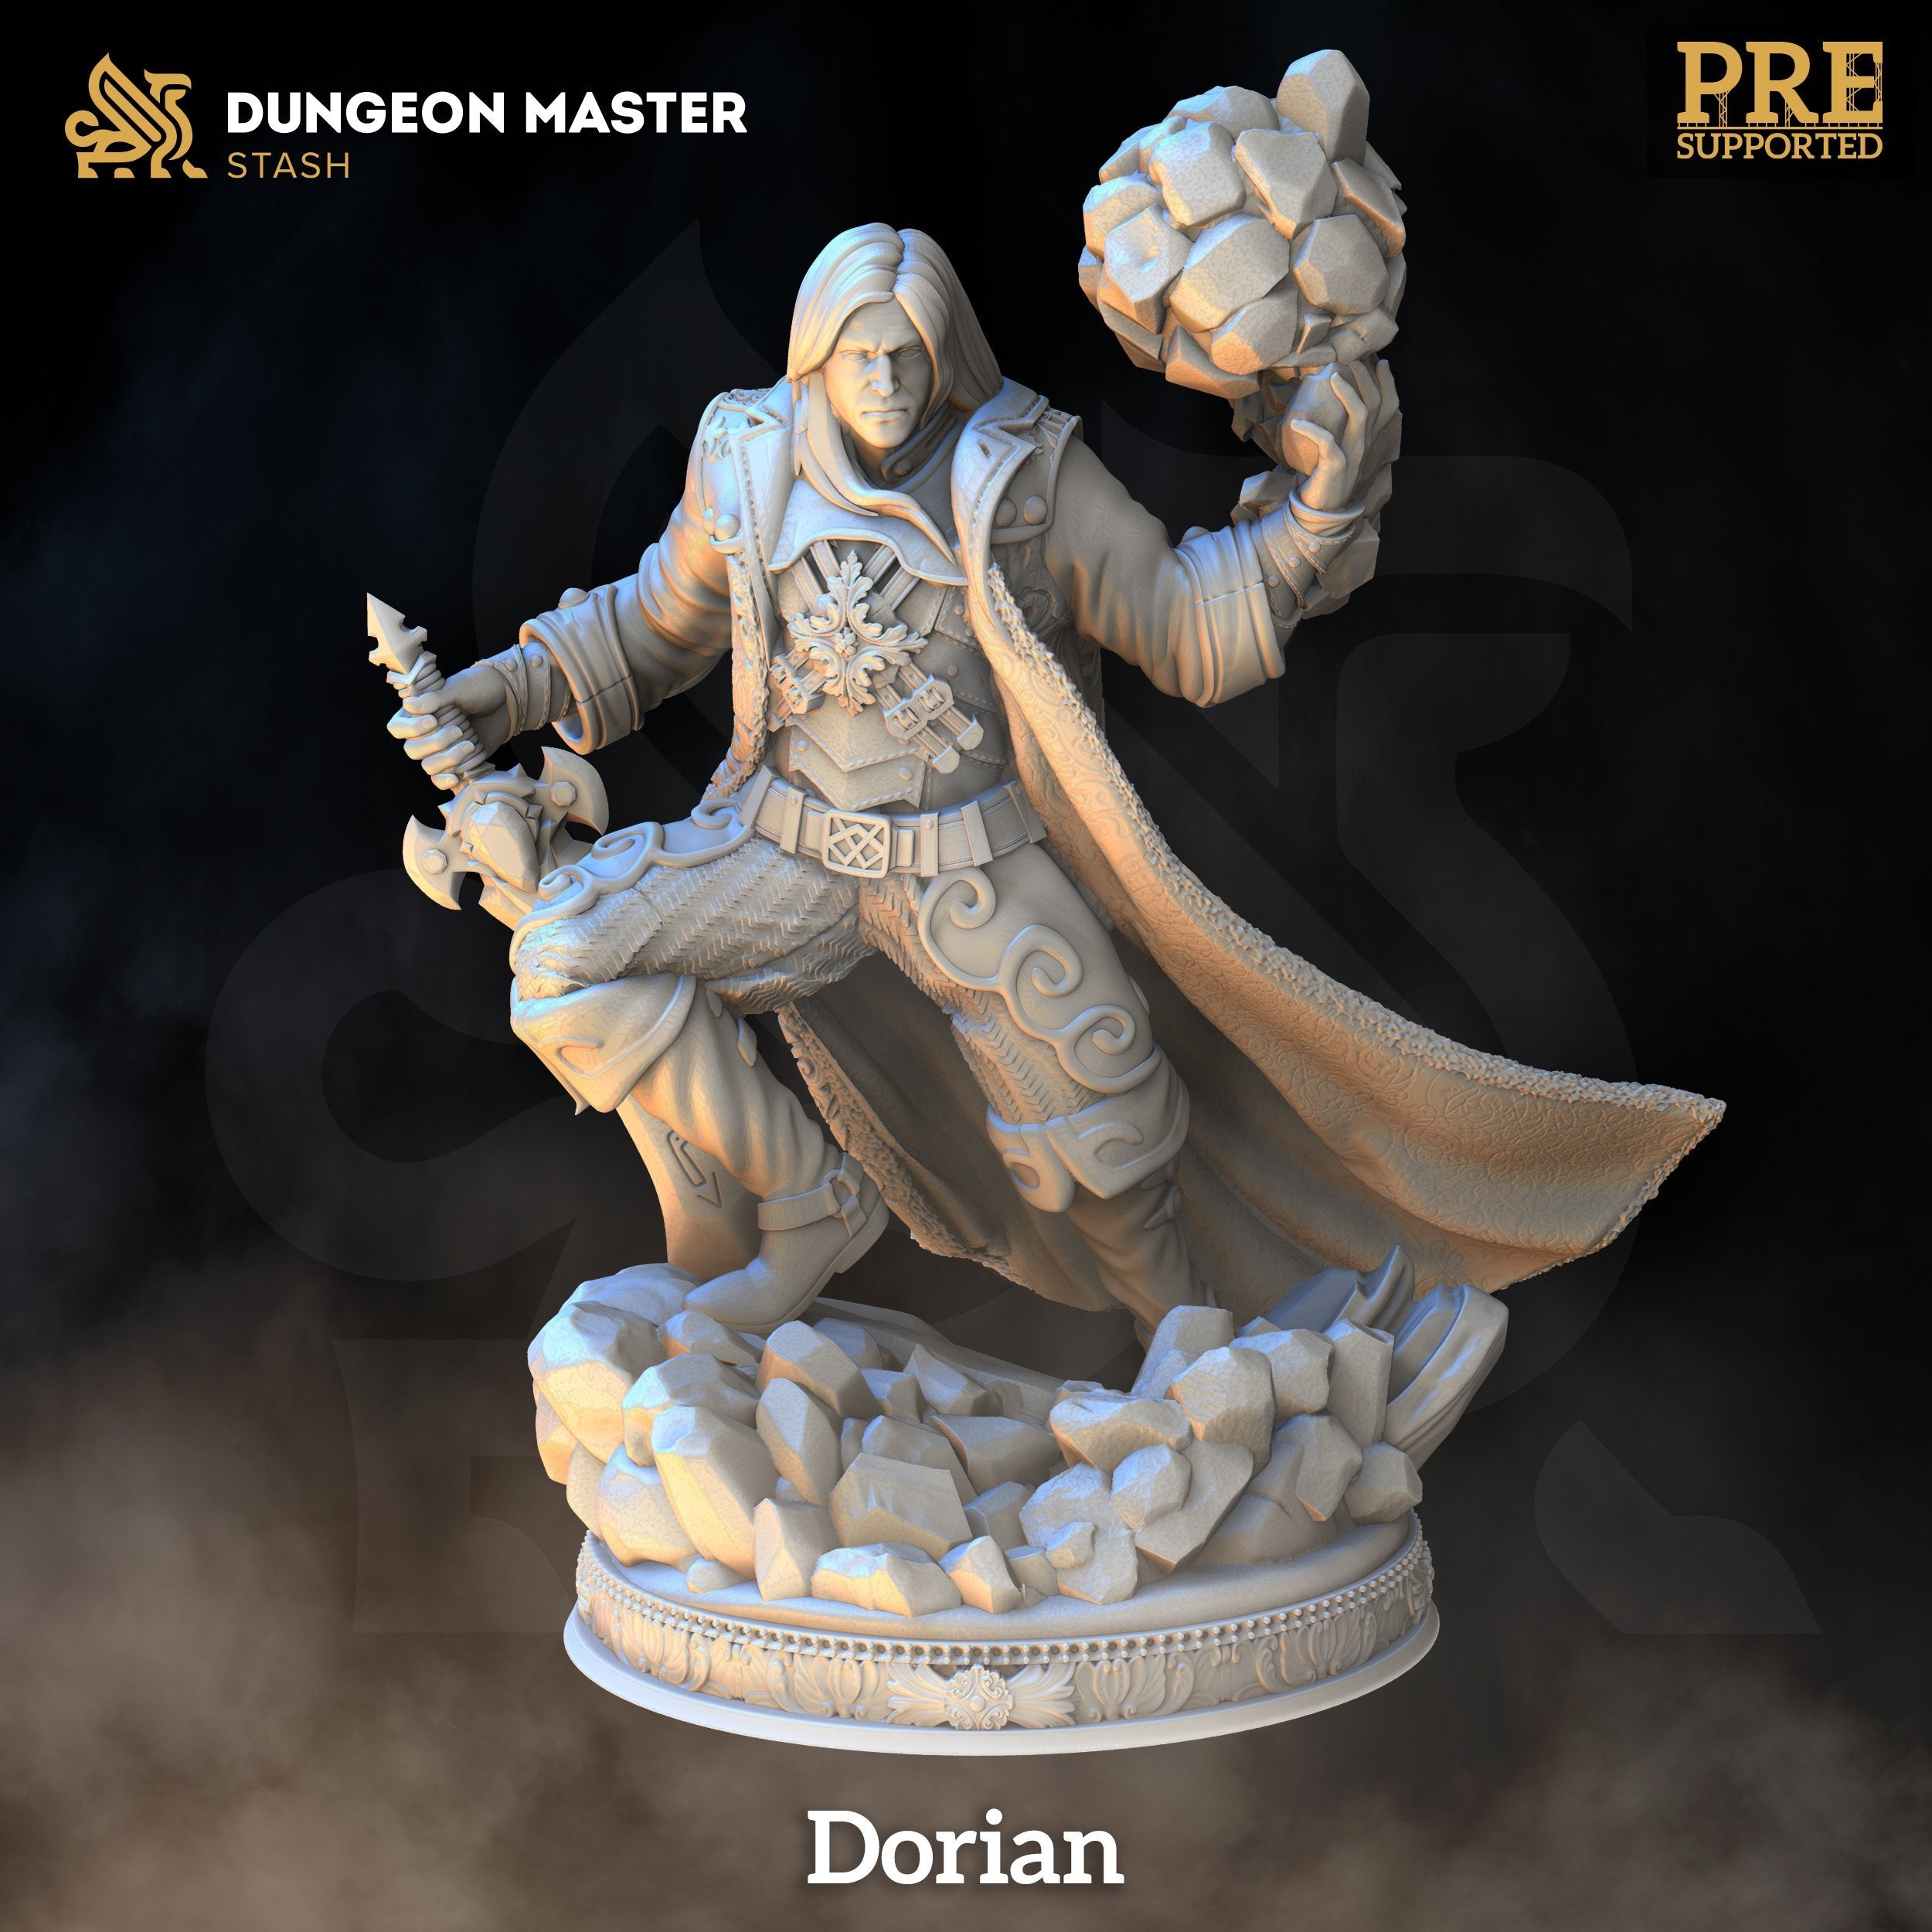 Dorian - The Printable Dragon